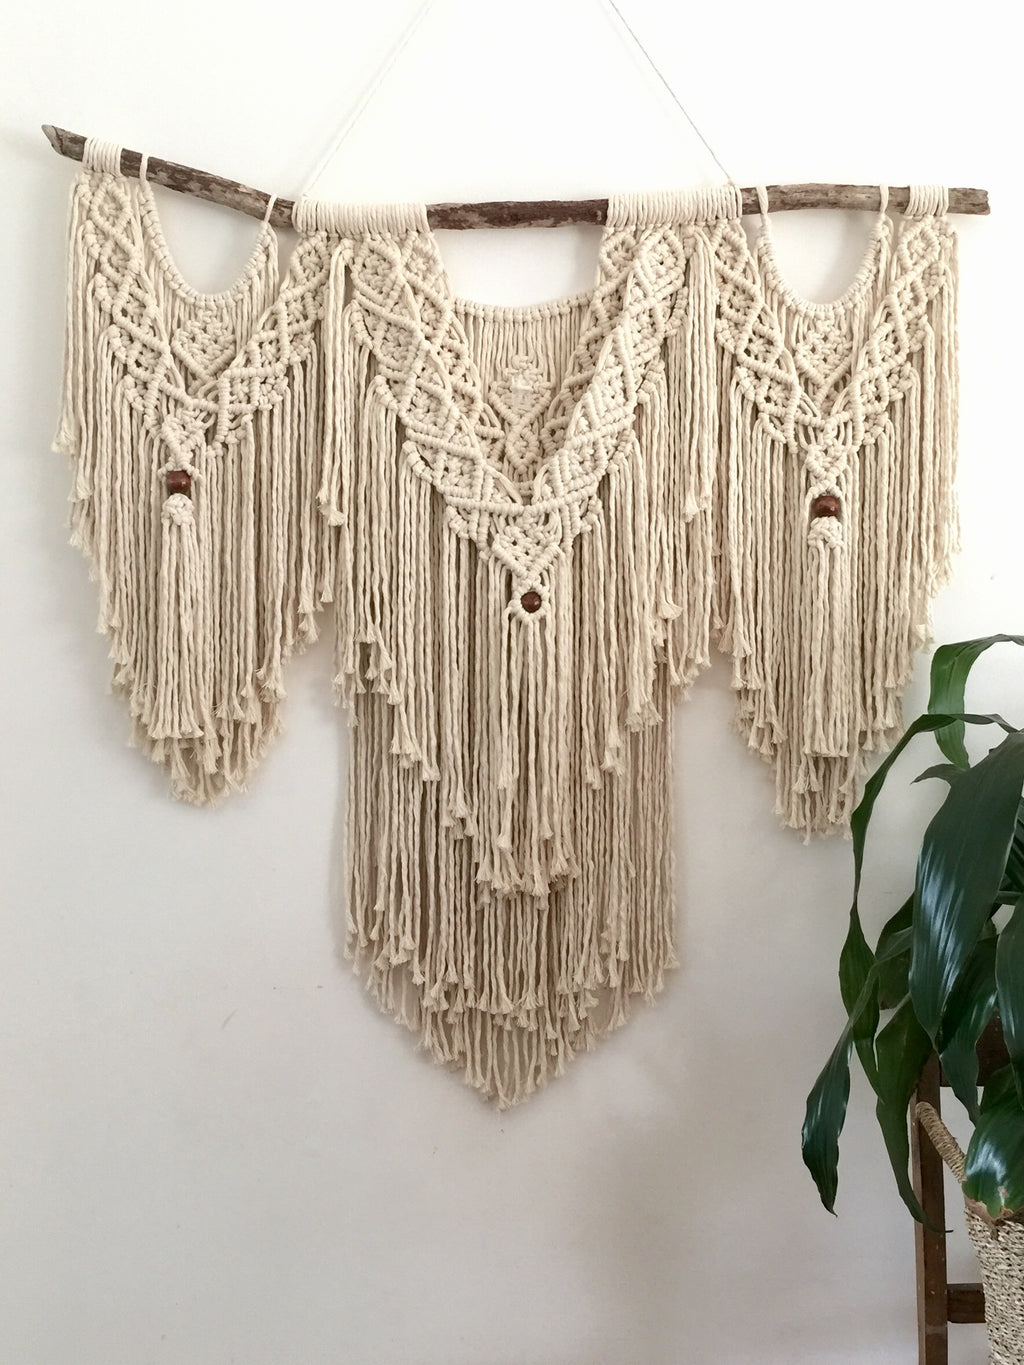 'Harmony' - Custom made Macramé Wall Hanger